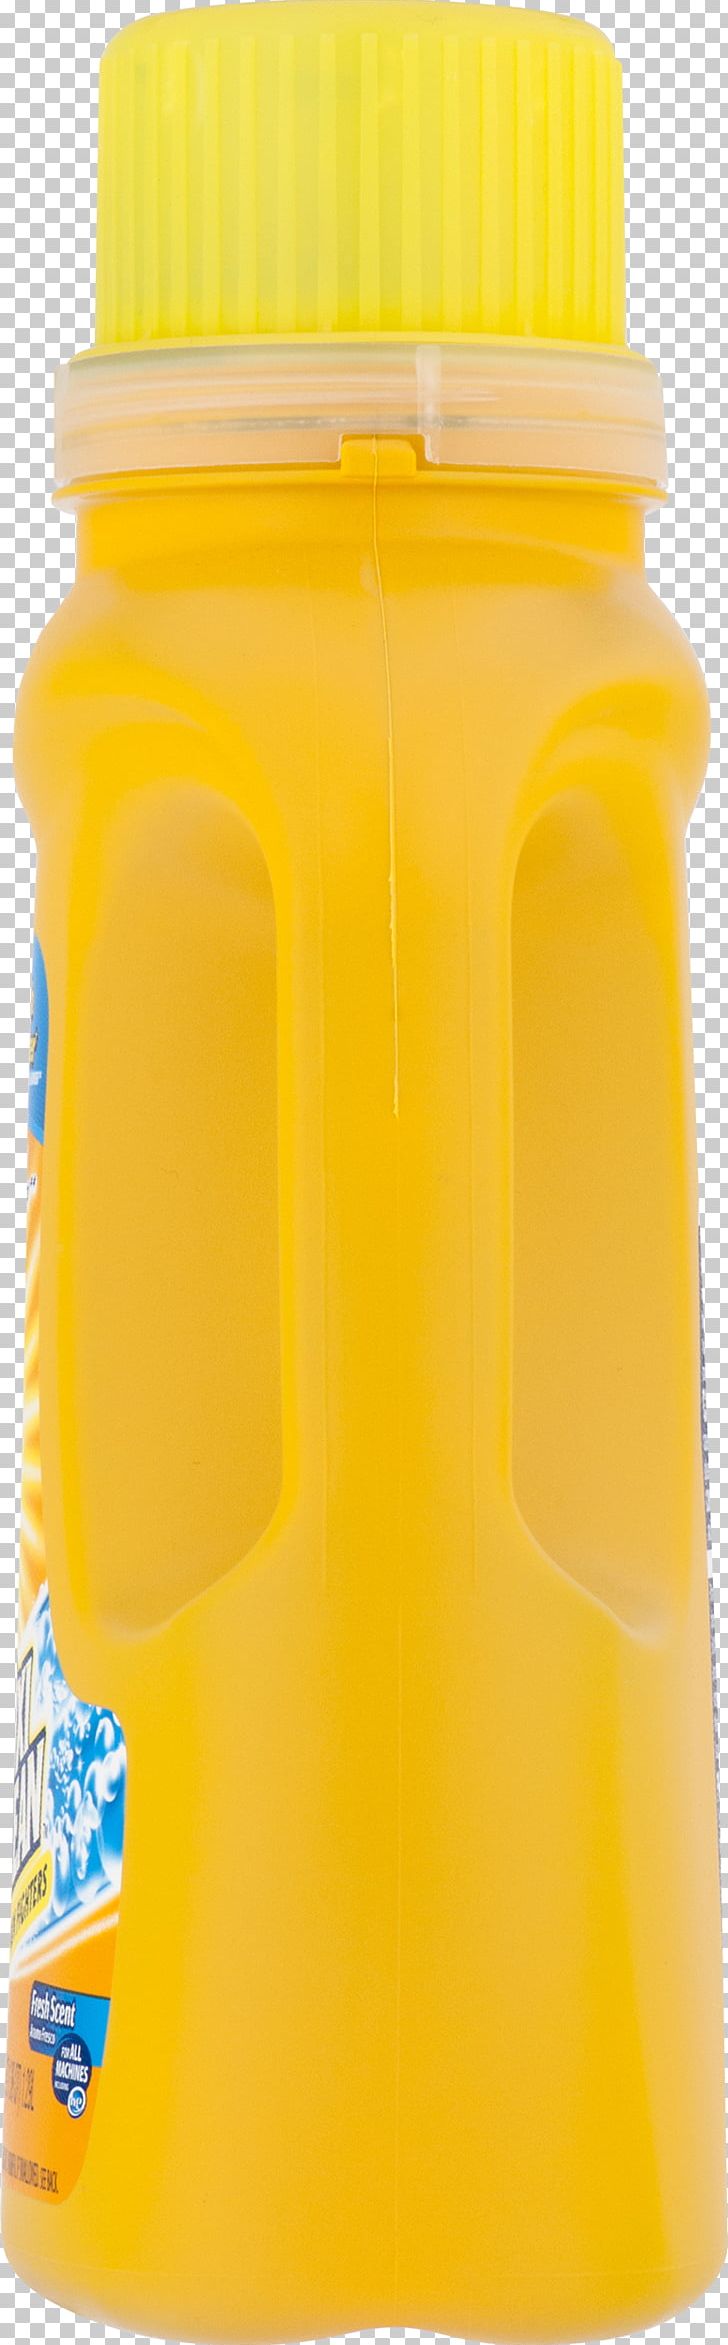 Orange Drink Orange Soft Drink Orange Juice Water Bottles Plastic Bottle PNG, Clipart, Bottle, Commodity, Detergent, Drink, Fresh Free PNG Download